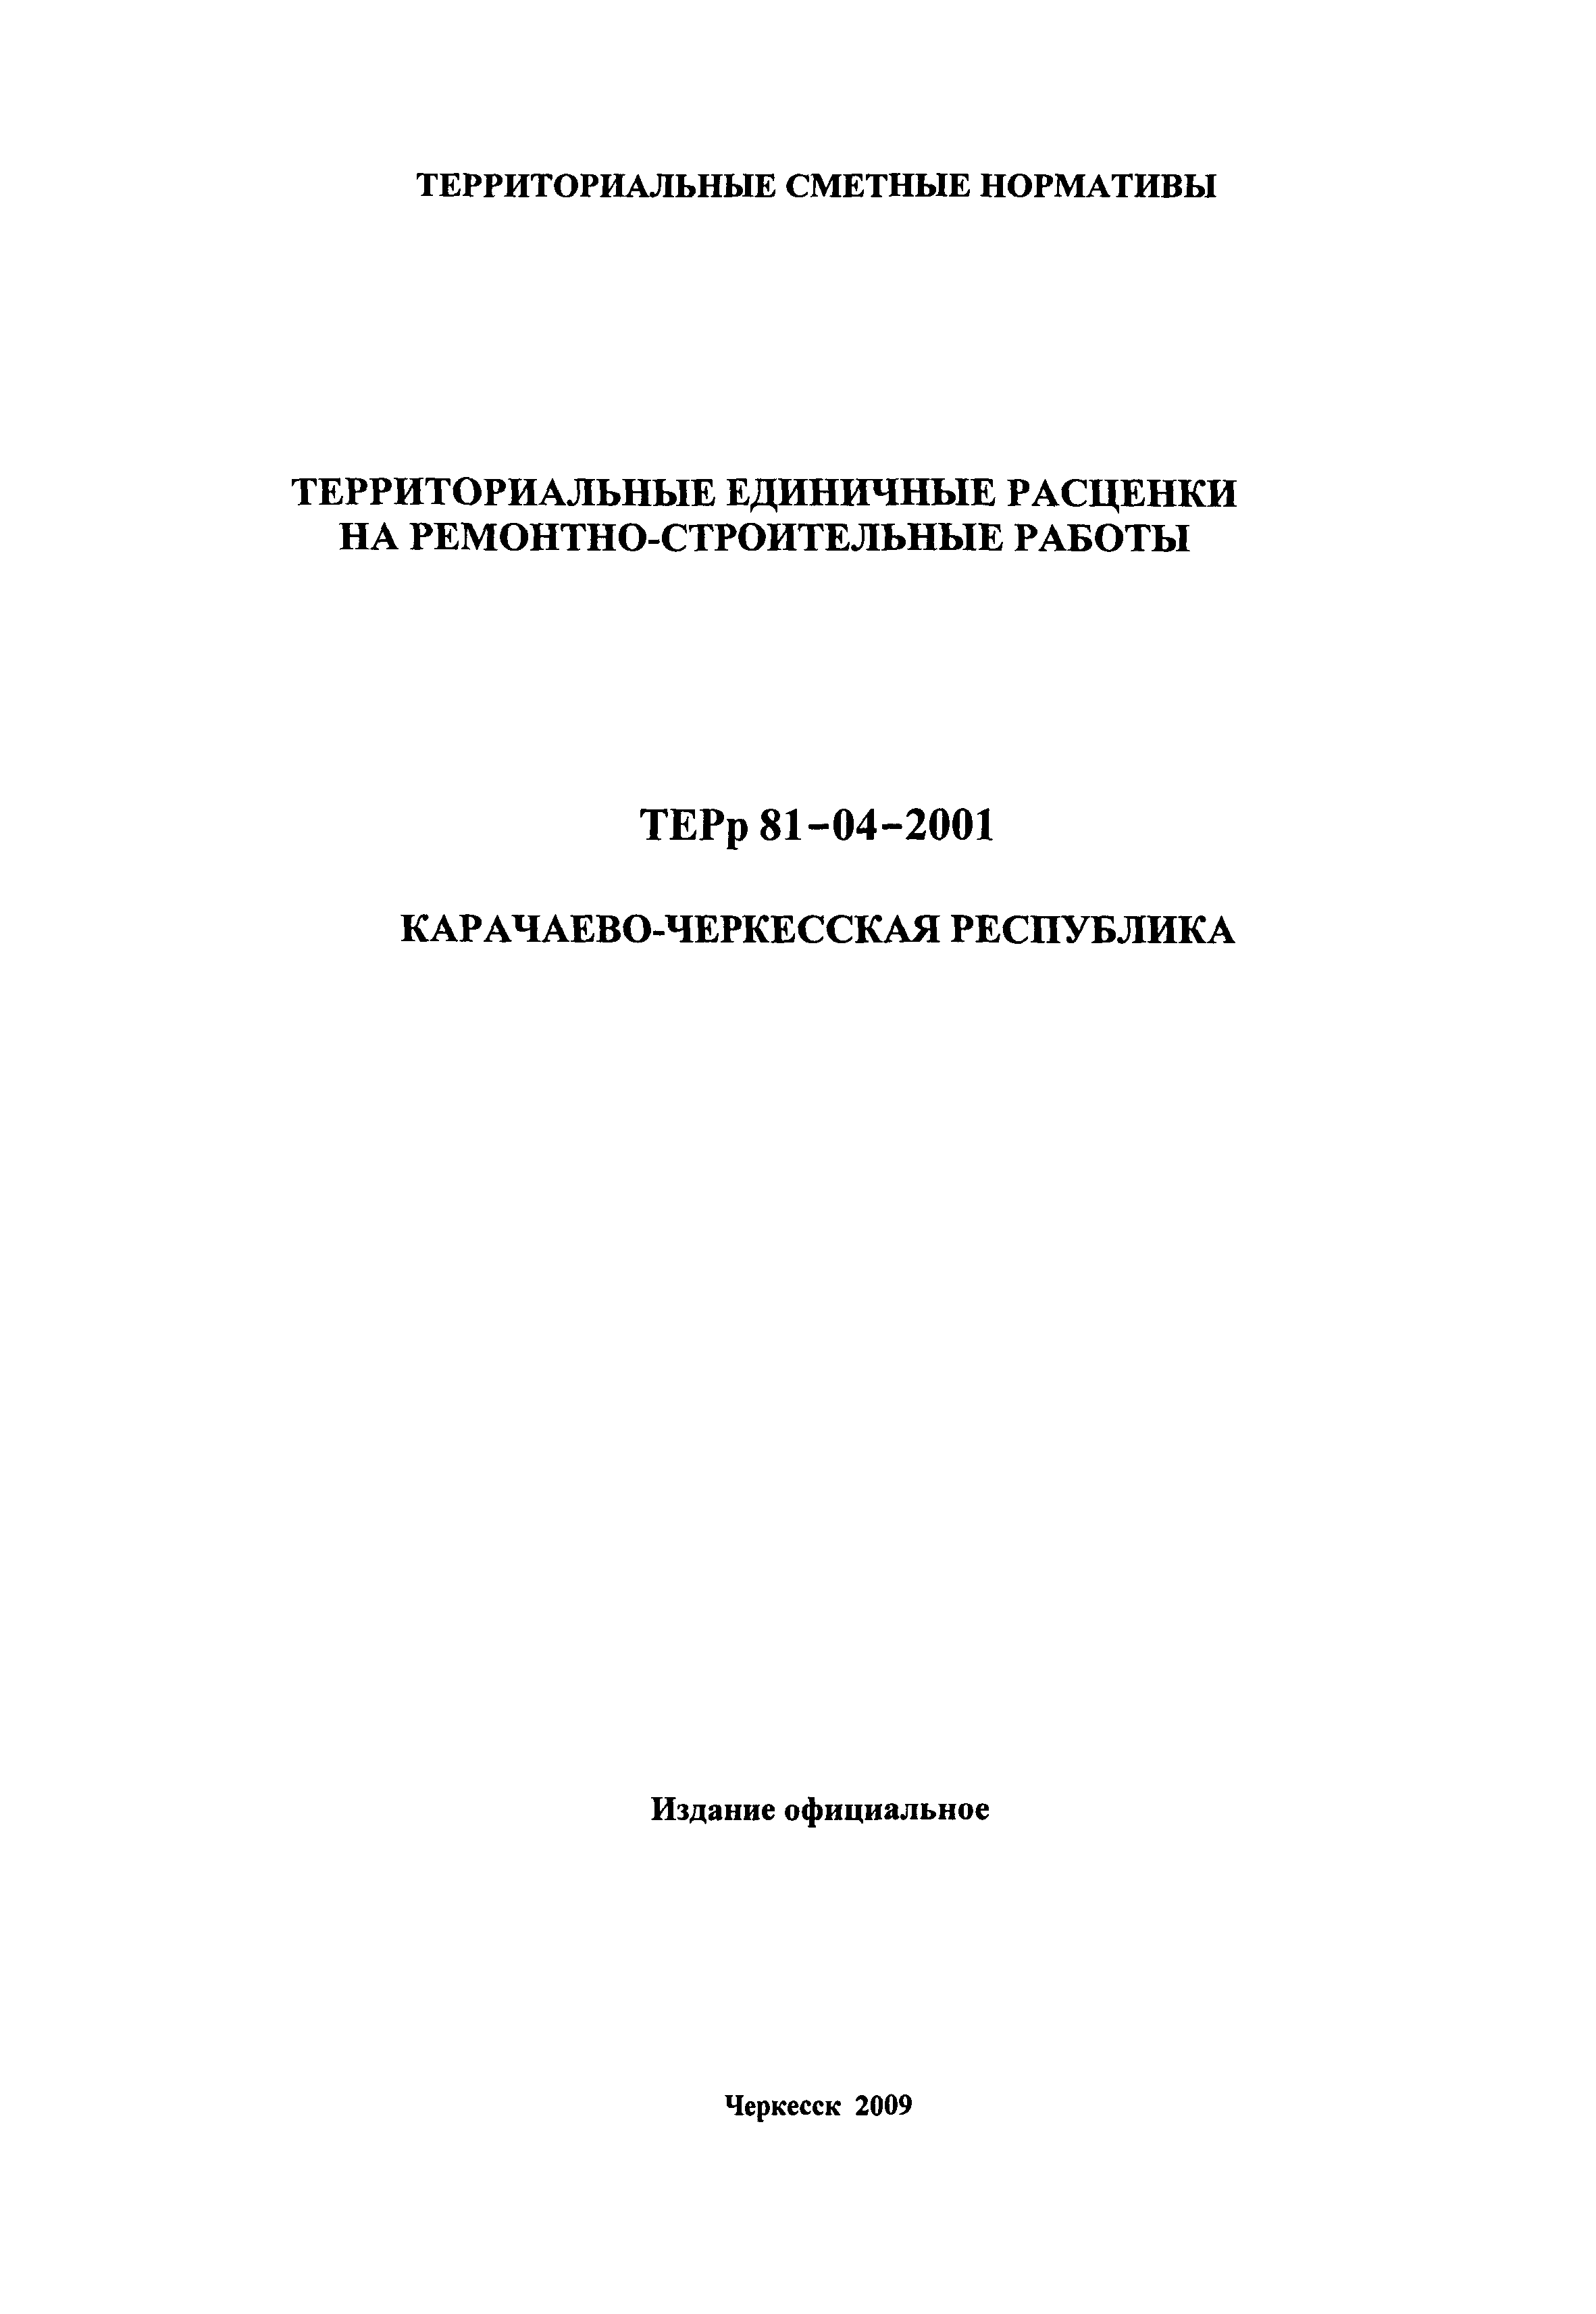 ТЕРр Карачаево-Черкесская Республика 2001-55